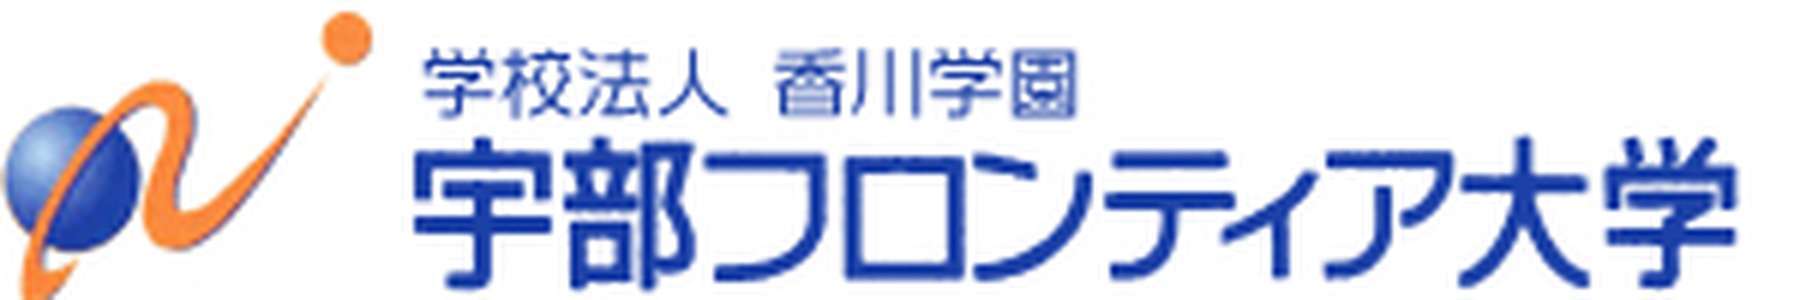 日本-宇部前沿大学-logo